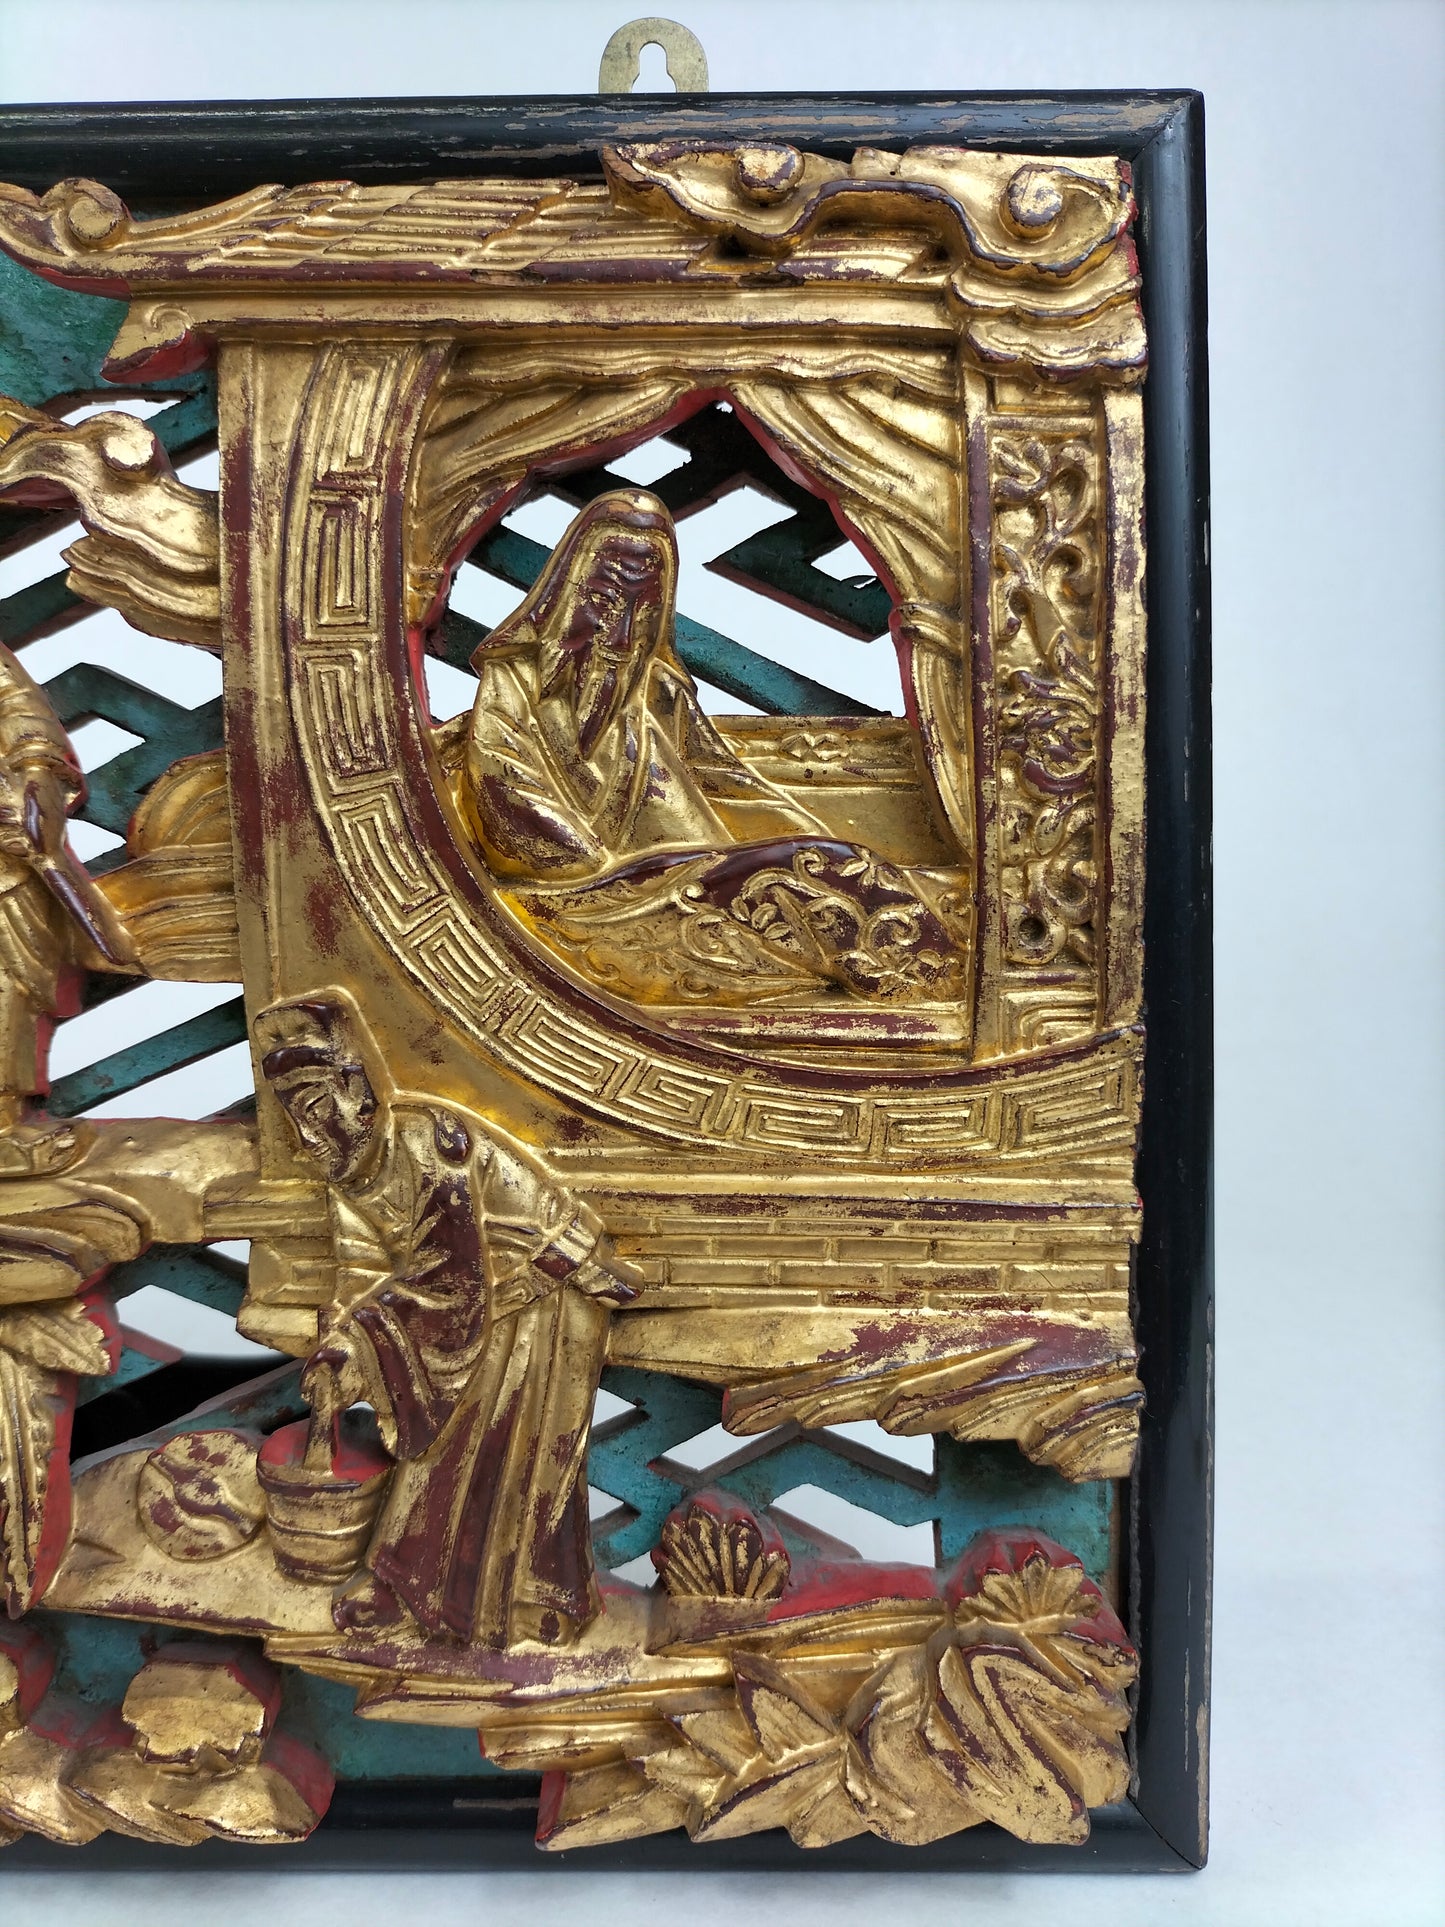 Tranh khắc gỗ thủ công cổ của Trung Quốc được trang trí bằng các hình vẽ // Đầu thế kỷ 20